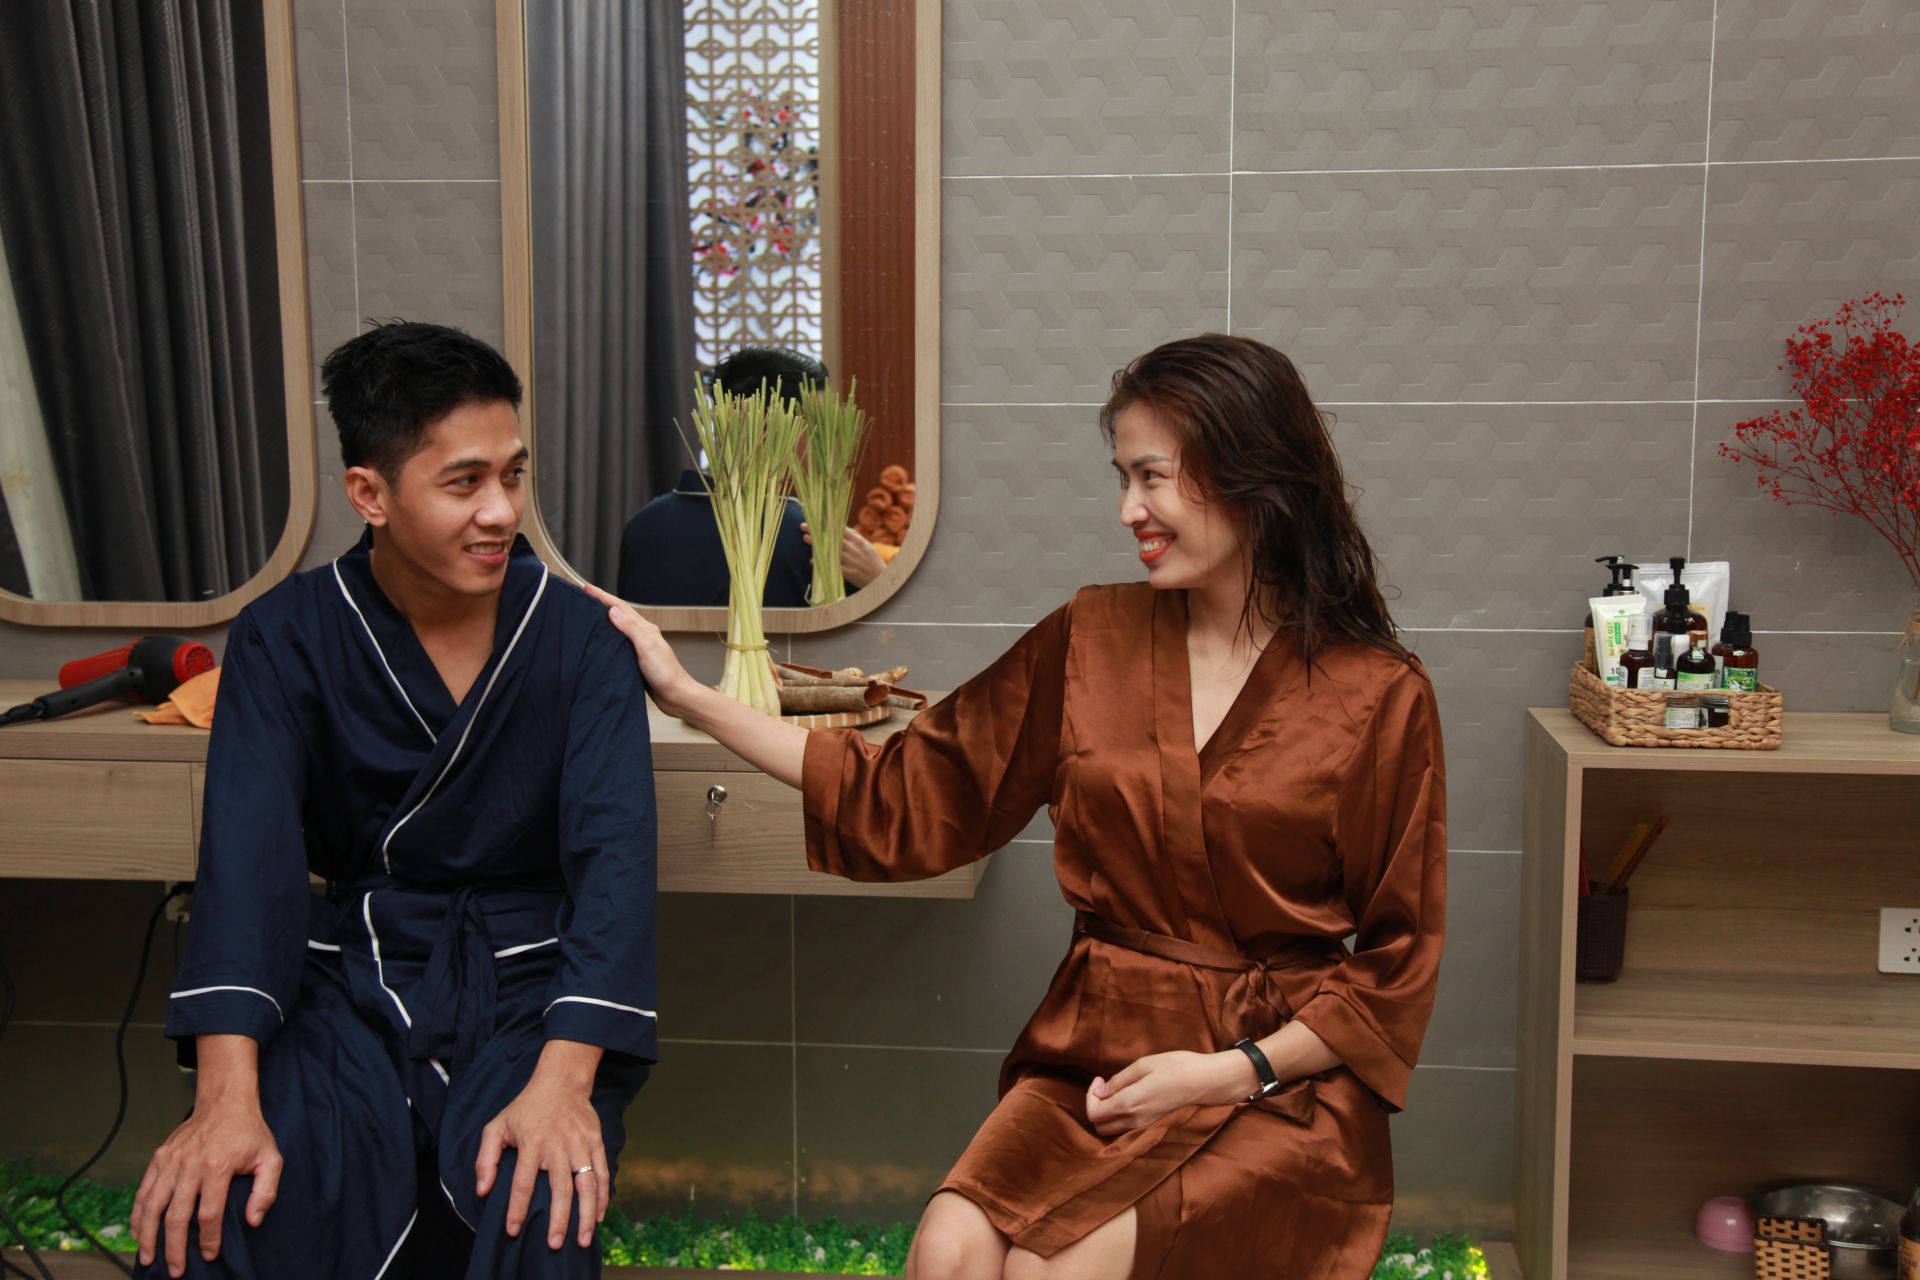 Massage cặp đôi - Không gian riêng tư cho đôi tình nhân